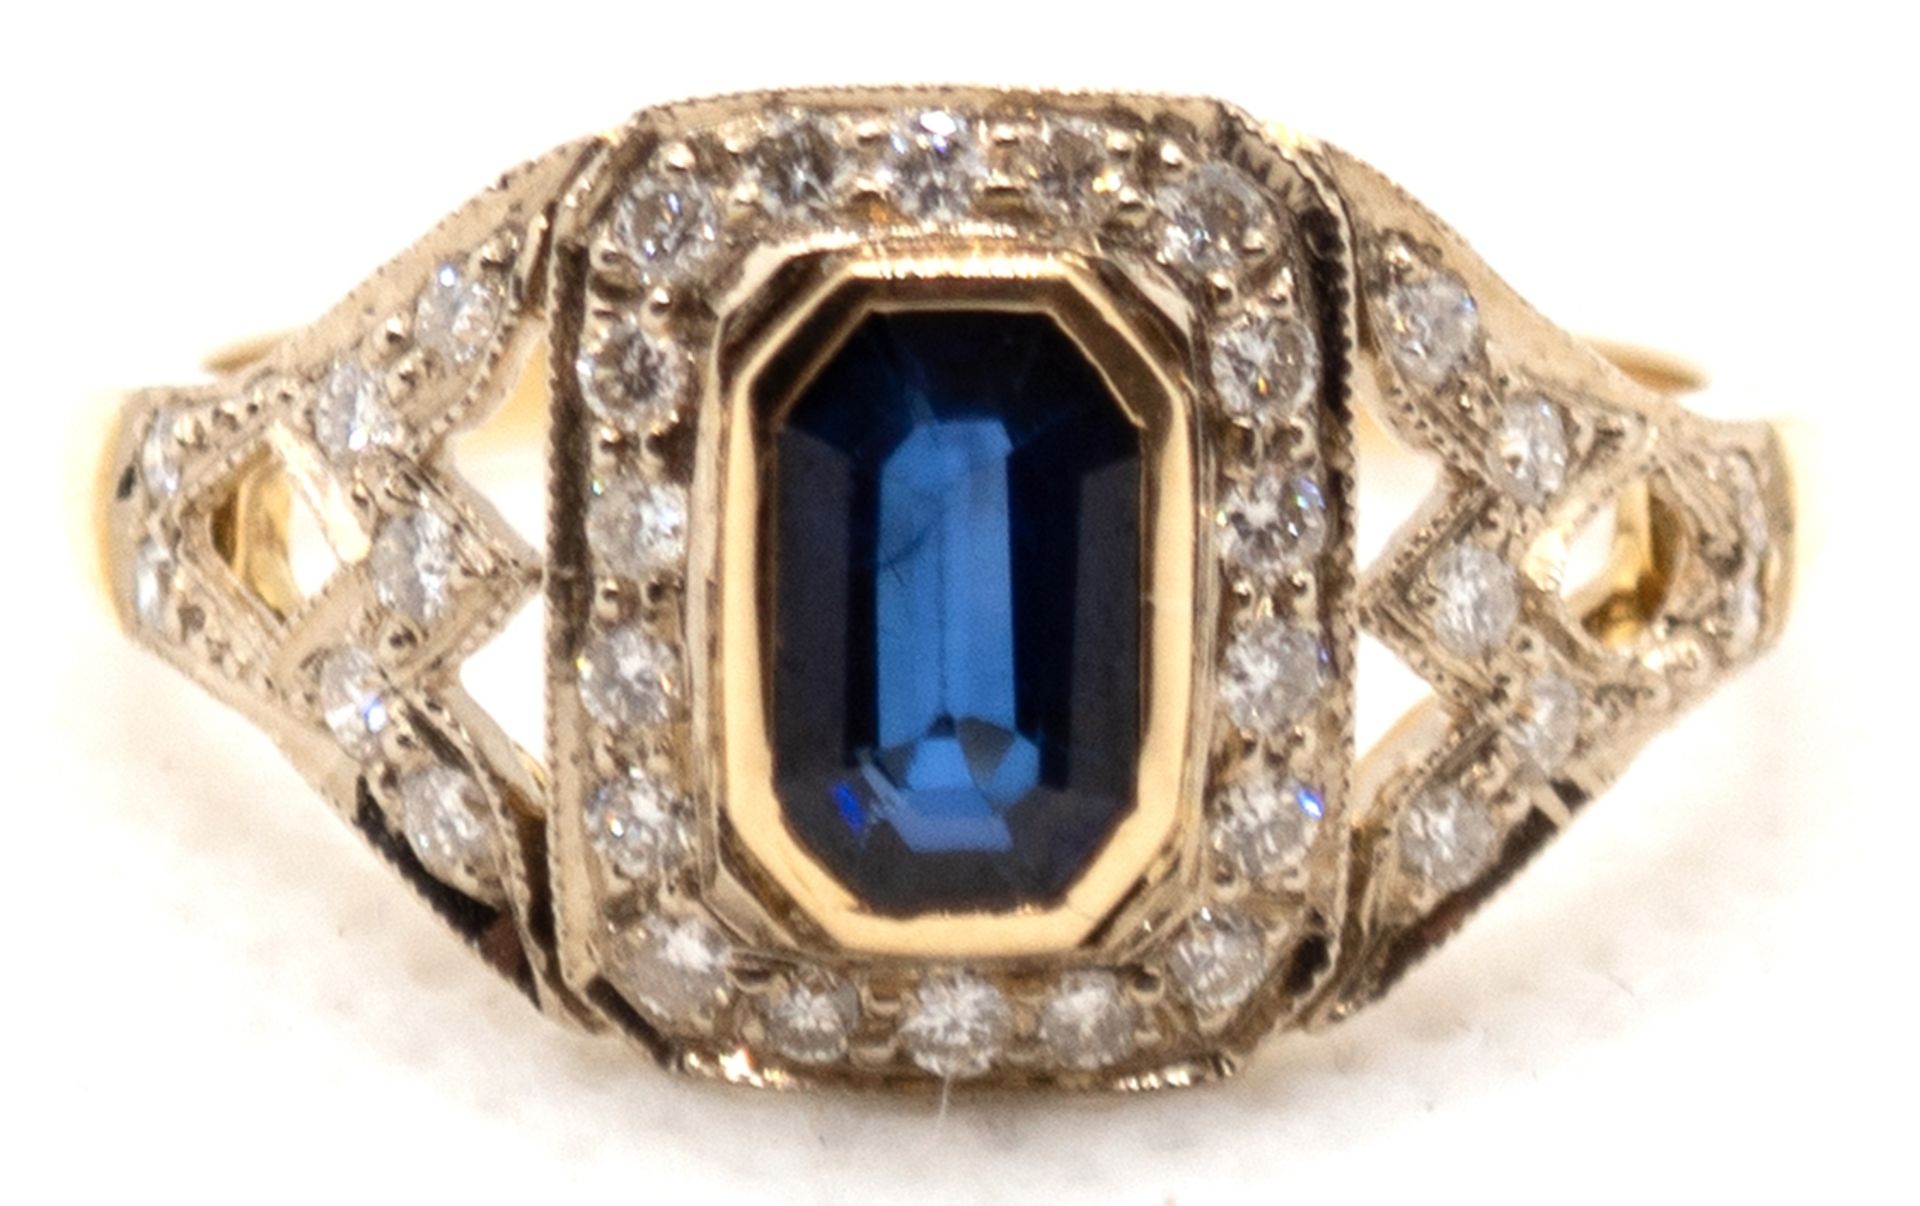 Ring im Art-Deco-Stil, 750er GG, 4,4 g, nicht gestempelt, wurde geprüft, Saphir 1,17 ct., Brillante